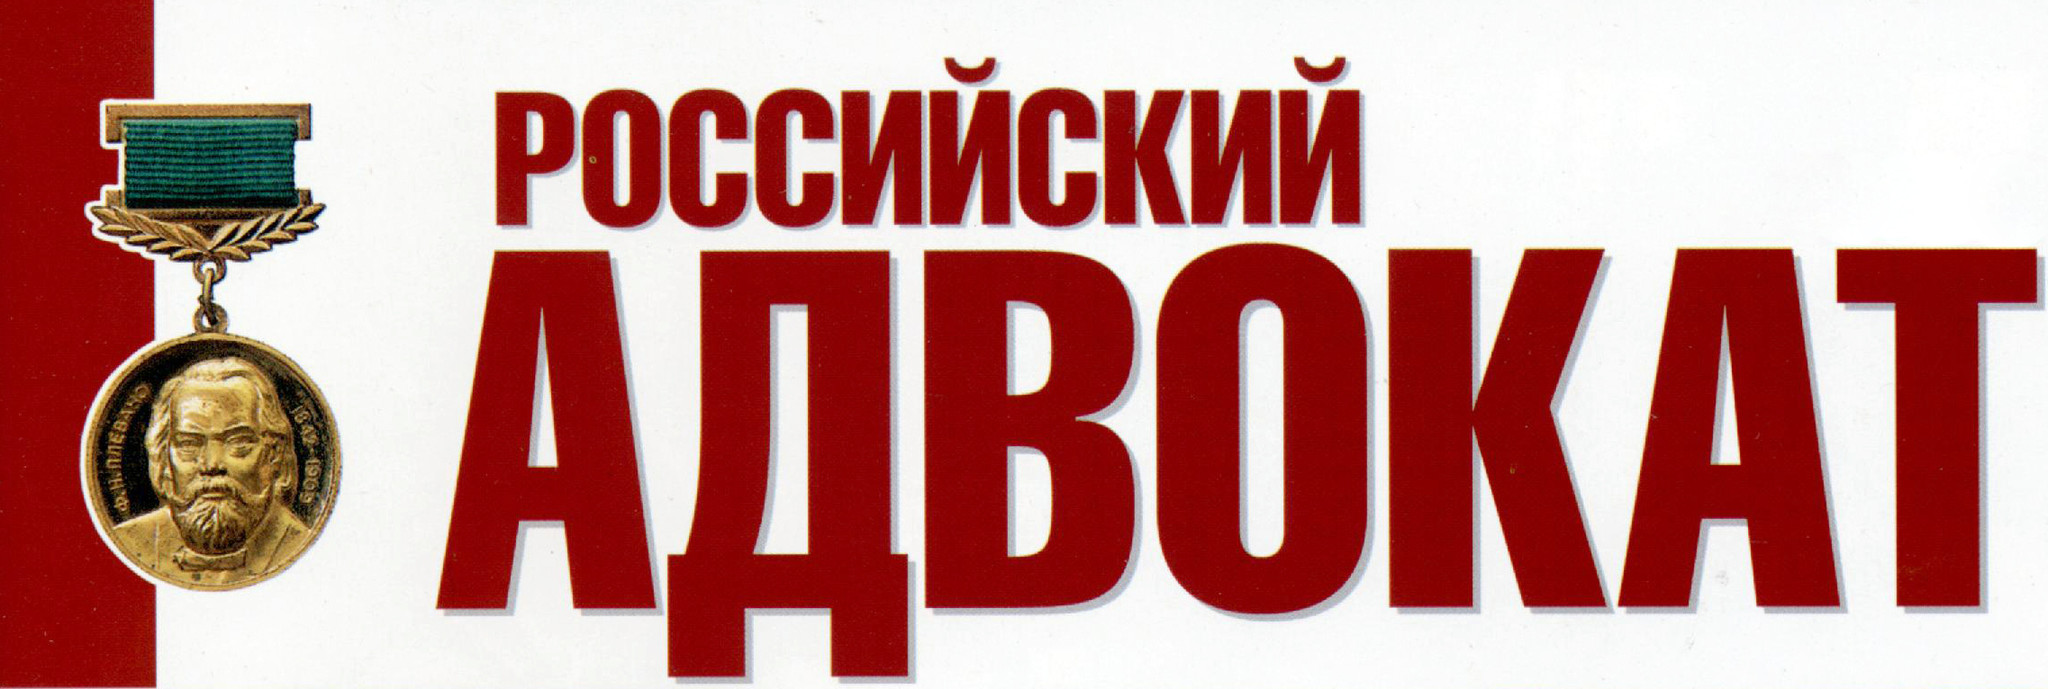 Российский адвокат журнал лого